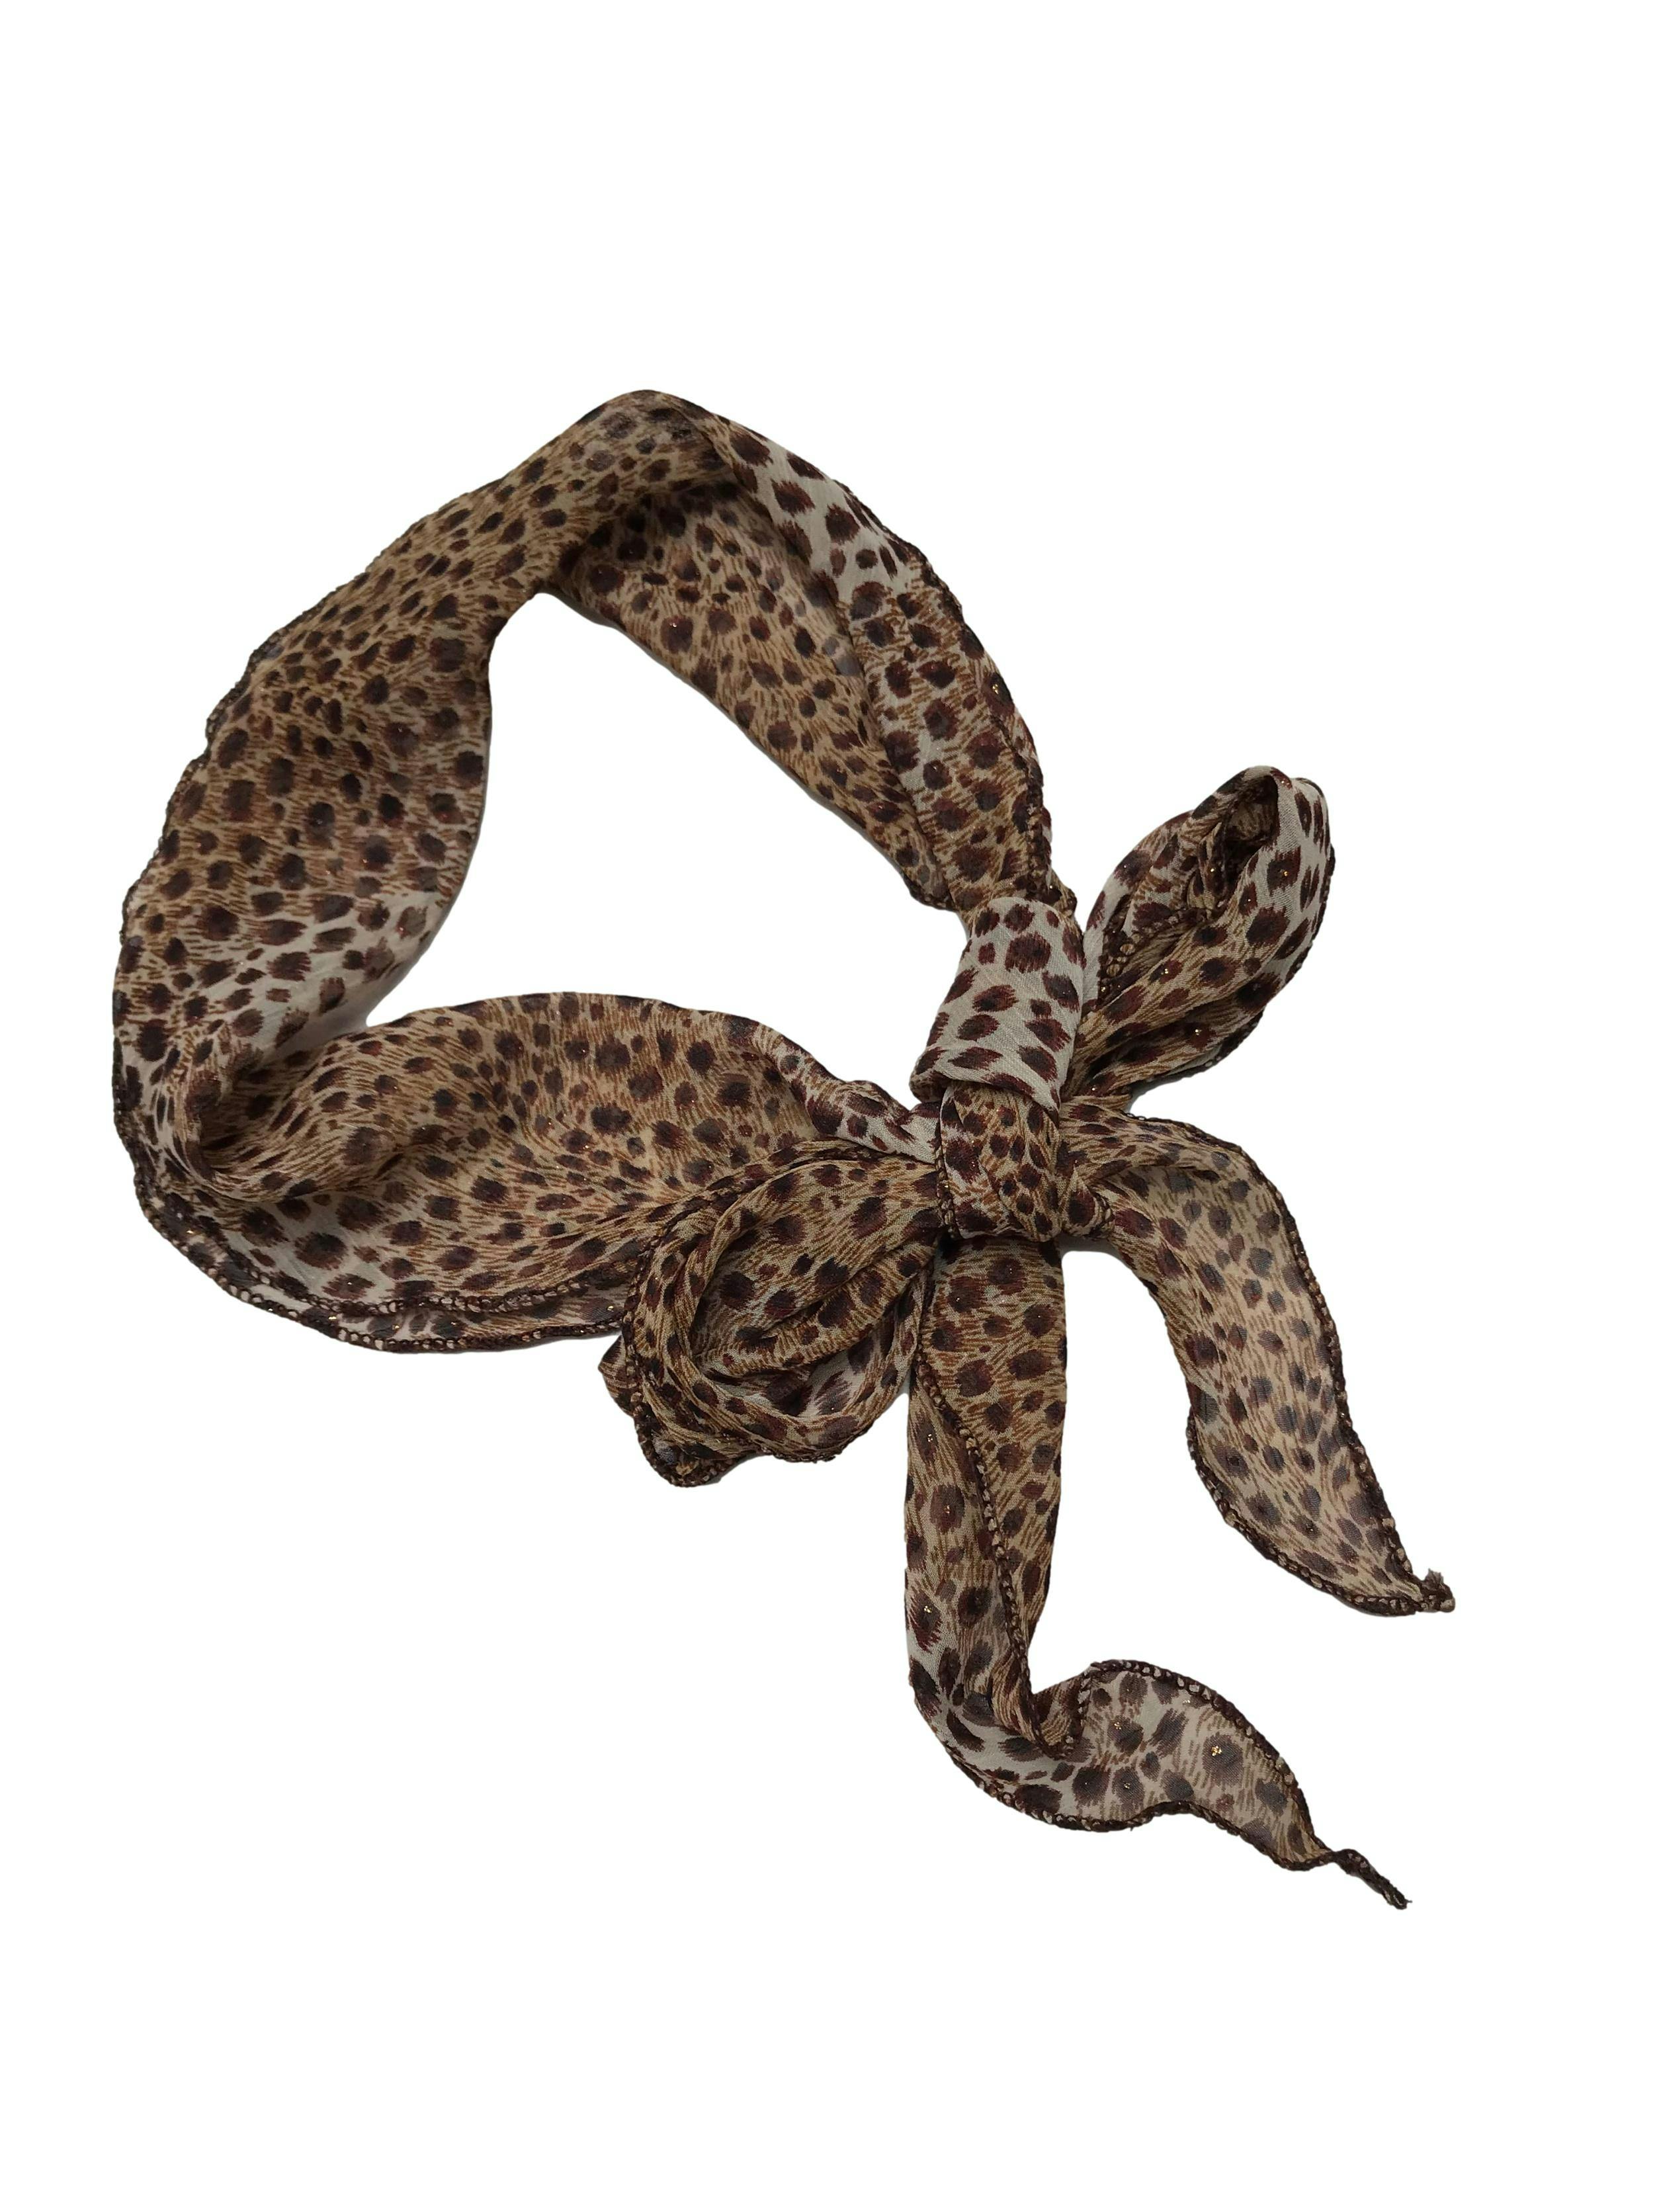 Pañuelo de gasa animal print, delgado para amarrar en el cuello. Medidas 15x140cm